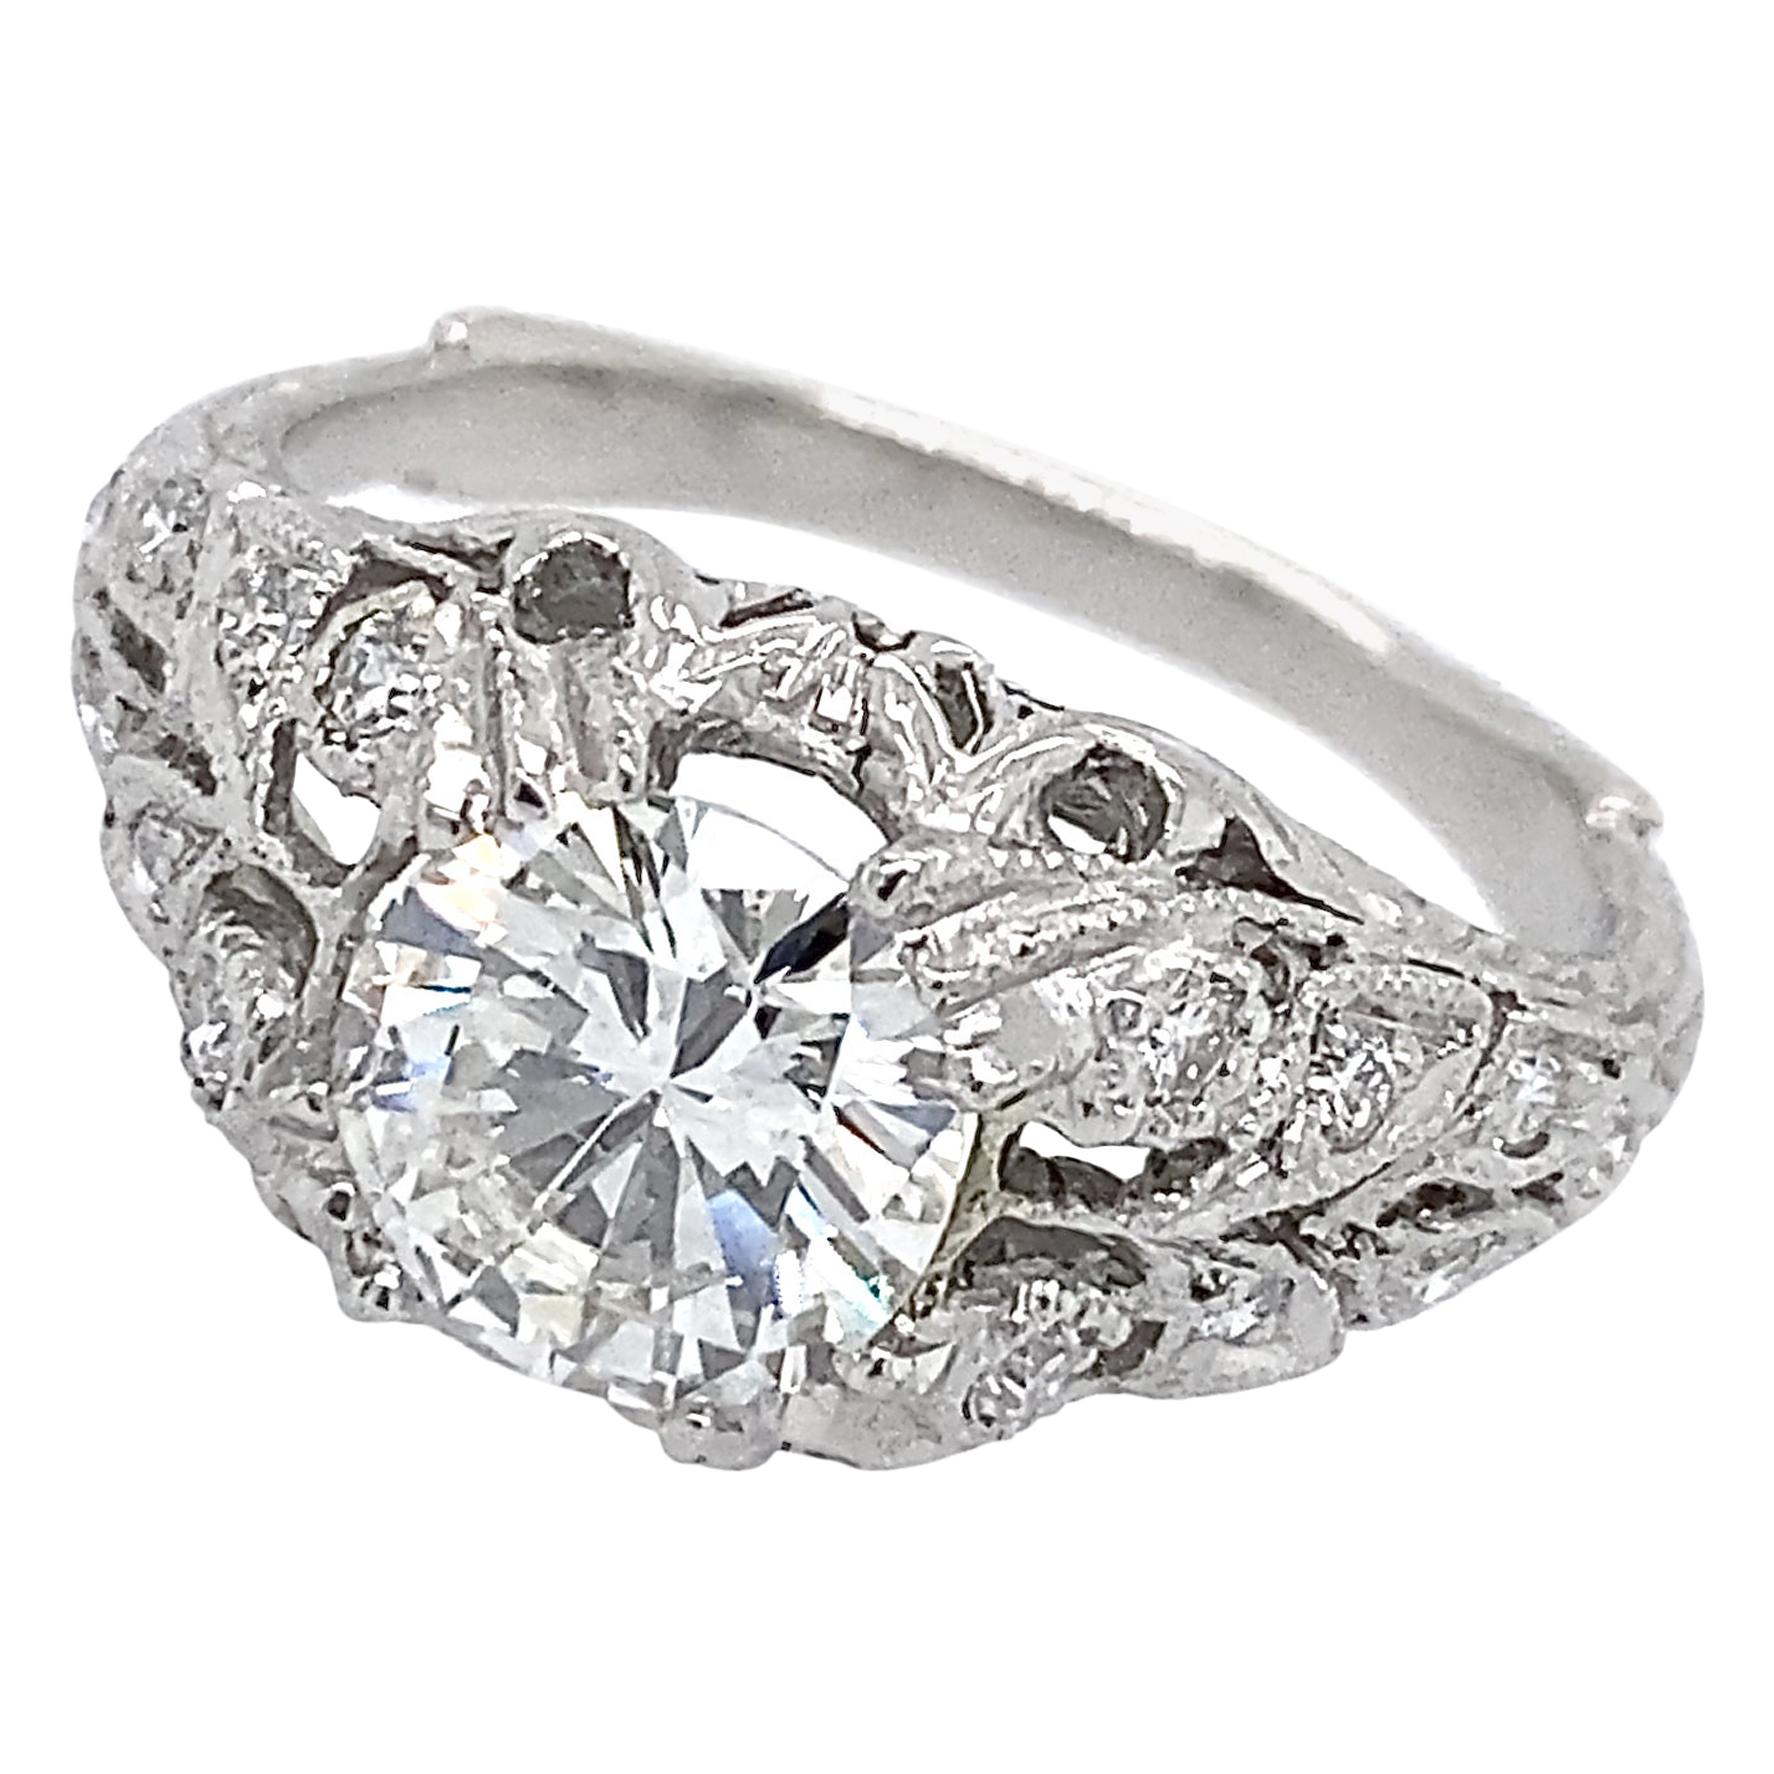 Certified 1.14 Carat Diamond in Edwardian-Inspired Platinum Engagement Ring